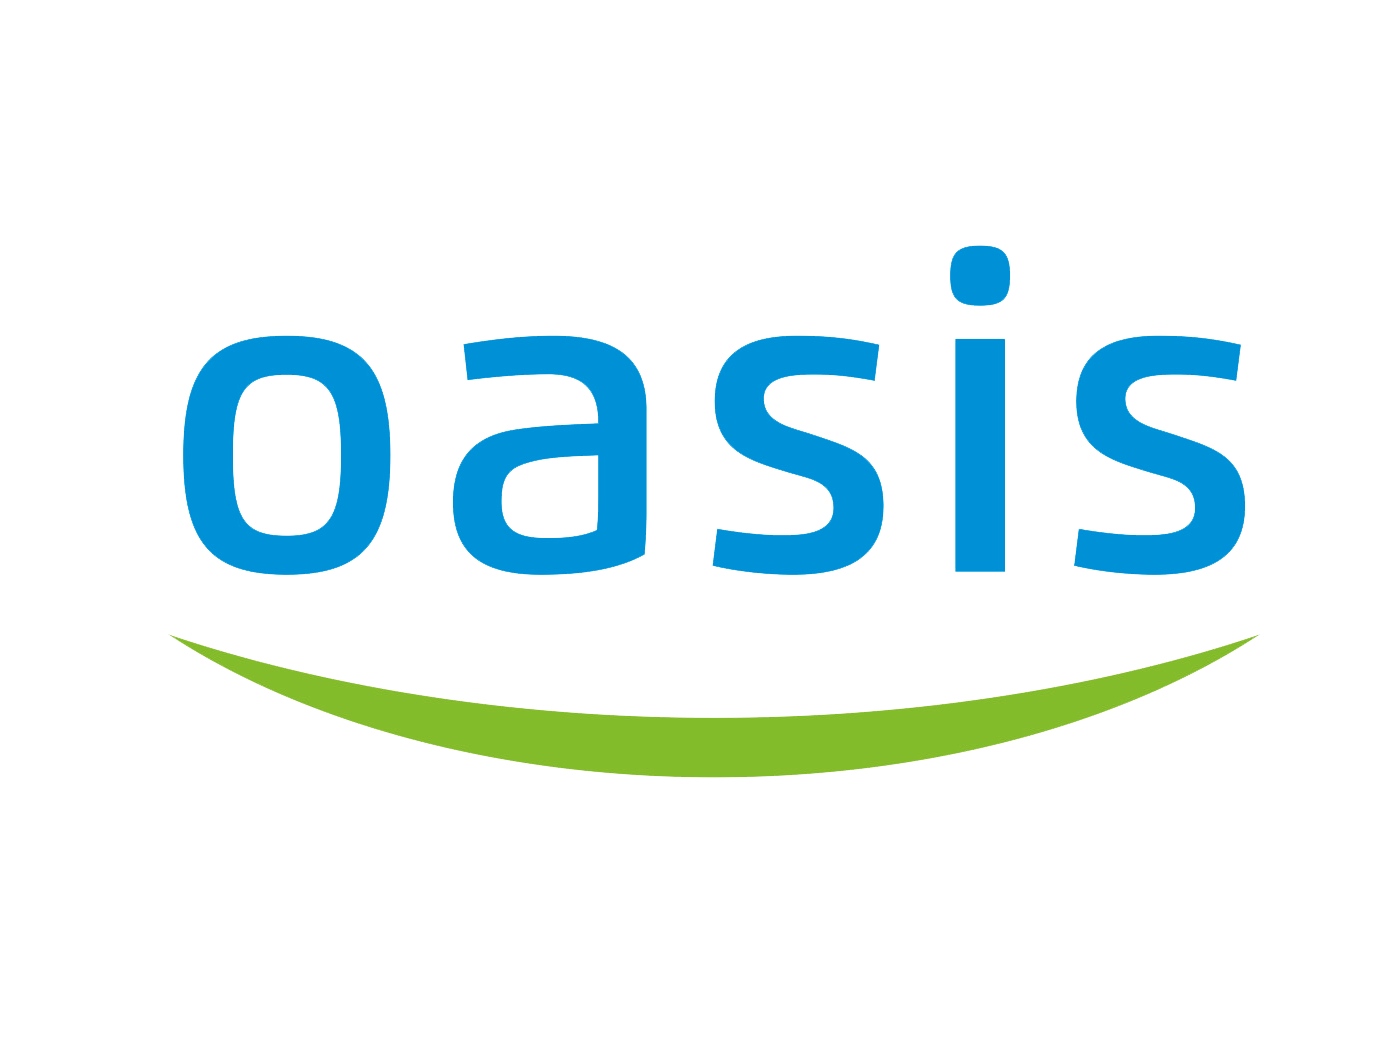 Логотип Оазис радиаторы. Oasis радиаторы логотип. Oasis логотип кондиционеры. Oasis водонагреватель logo.